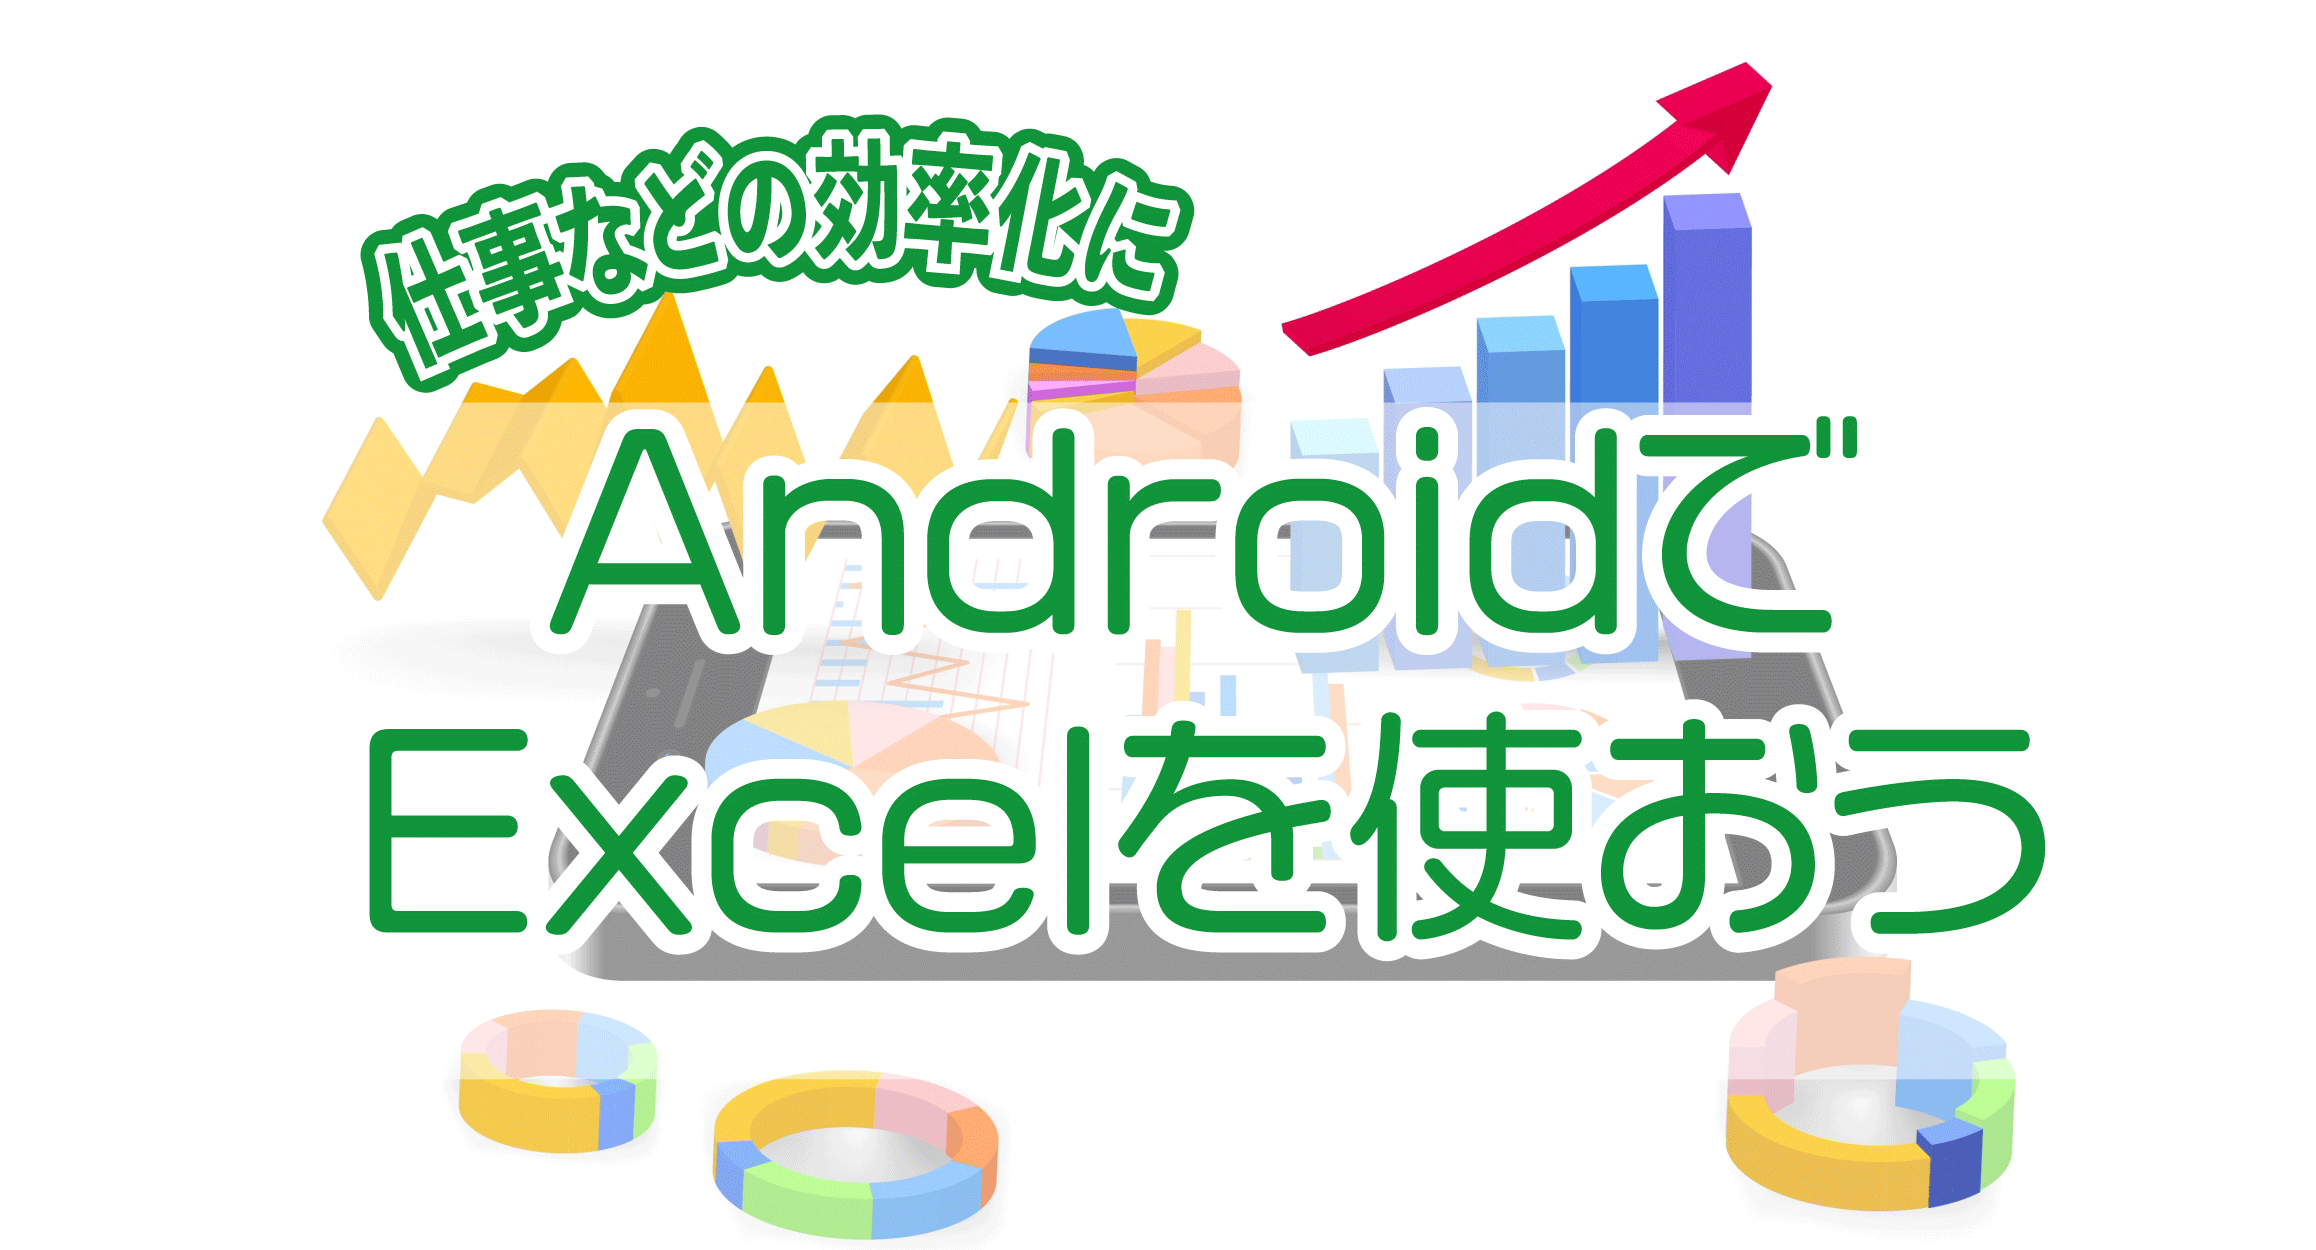 AndroidでExcel(エクセル)を使おう!| 仕事などの効率化に